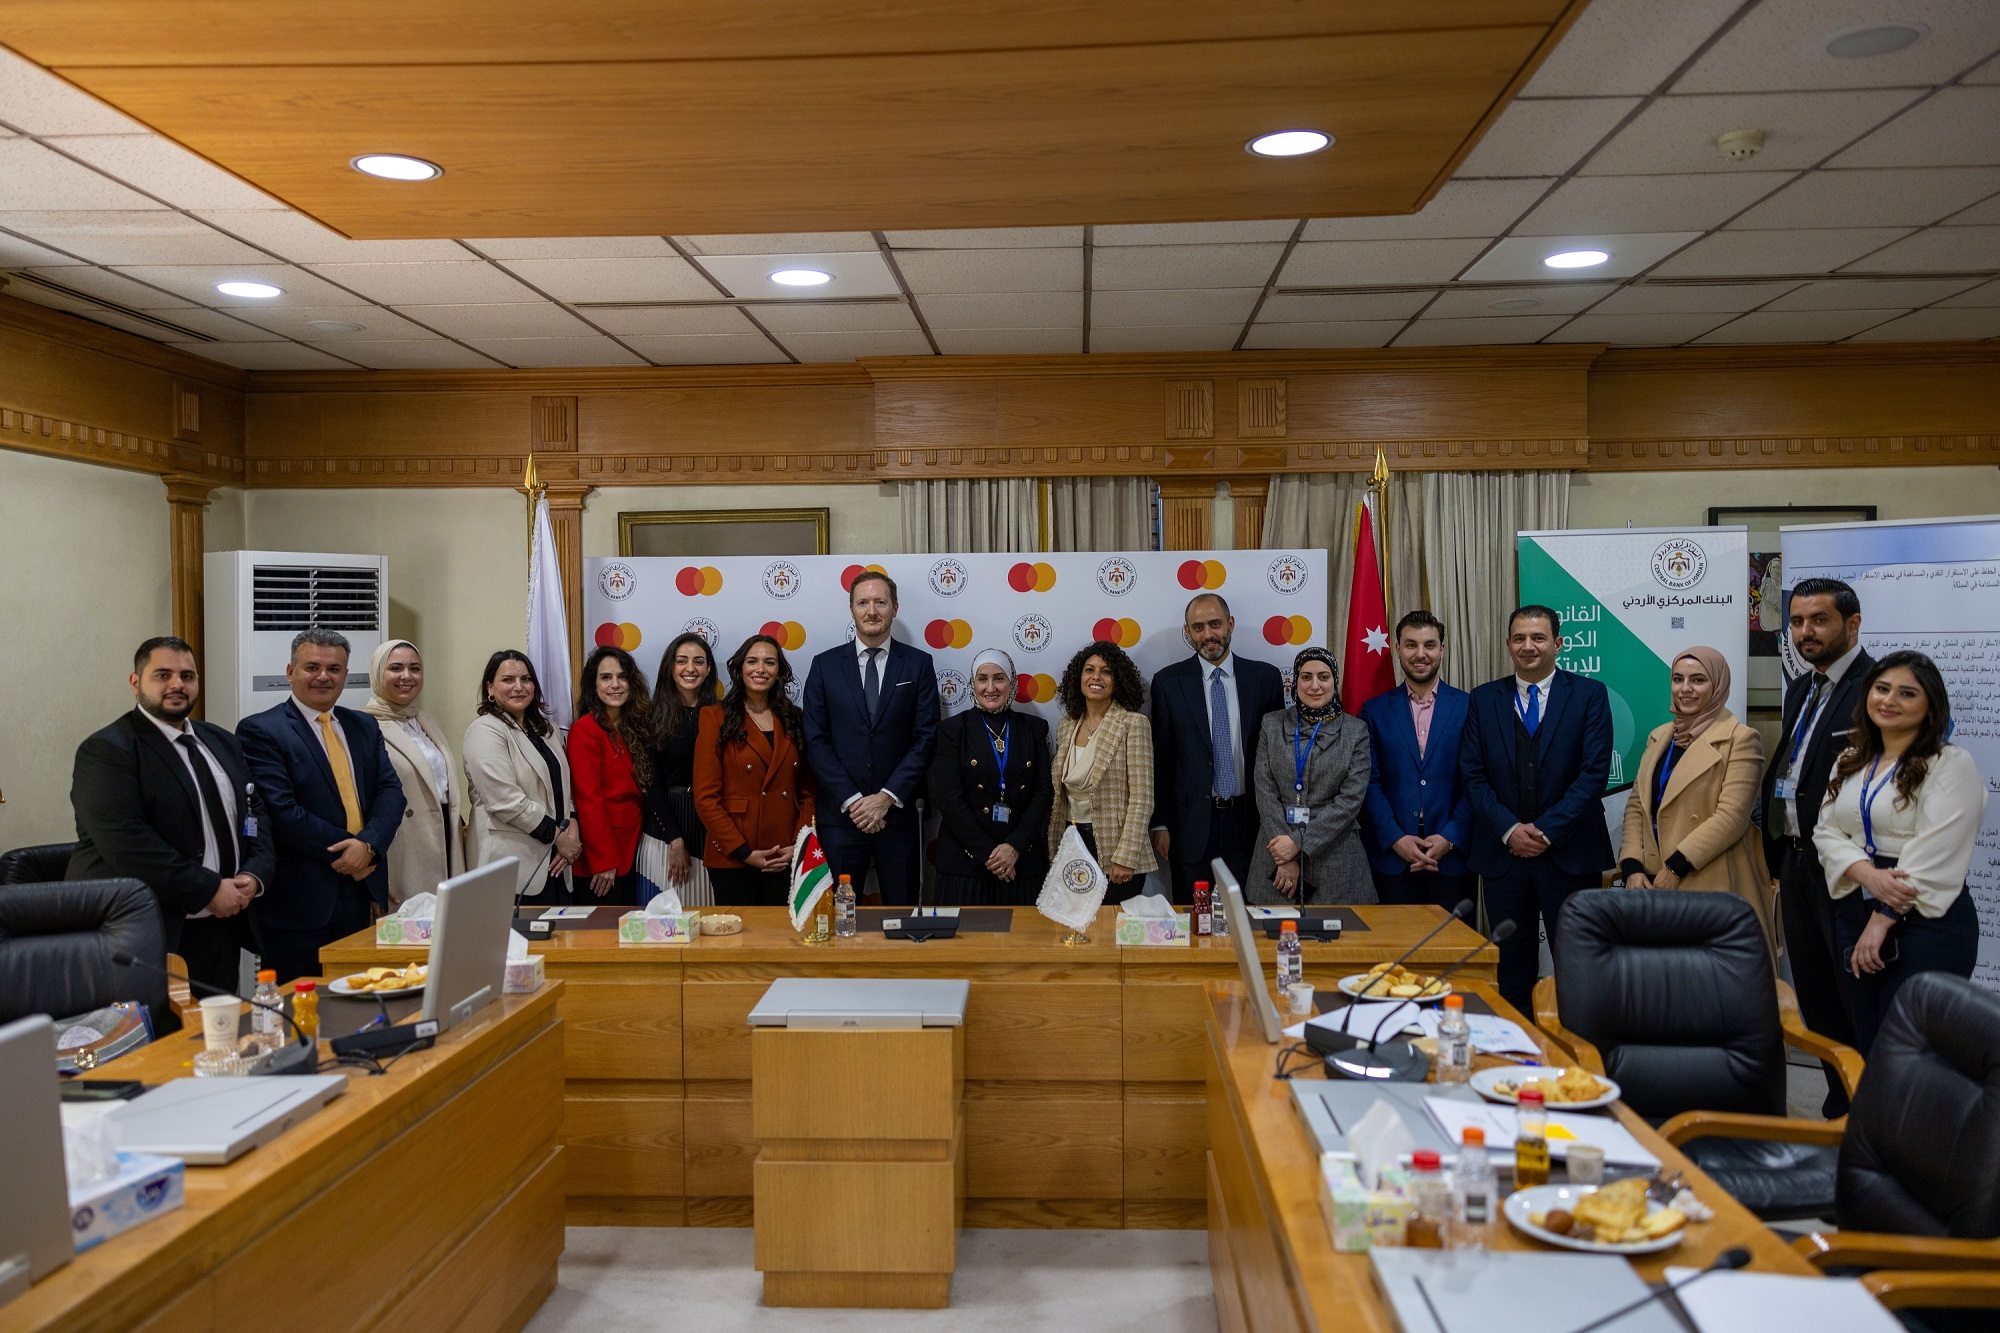 ماستركارد تتعاون مع البنك المركزي الأردني لتعزيز منظومة مدفوعات رقمية قوية في المملكة